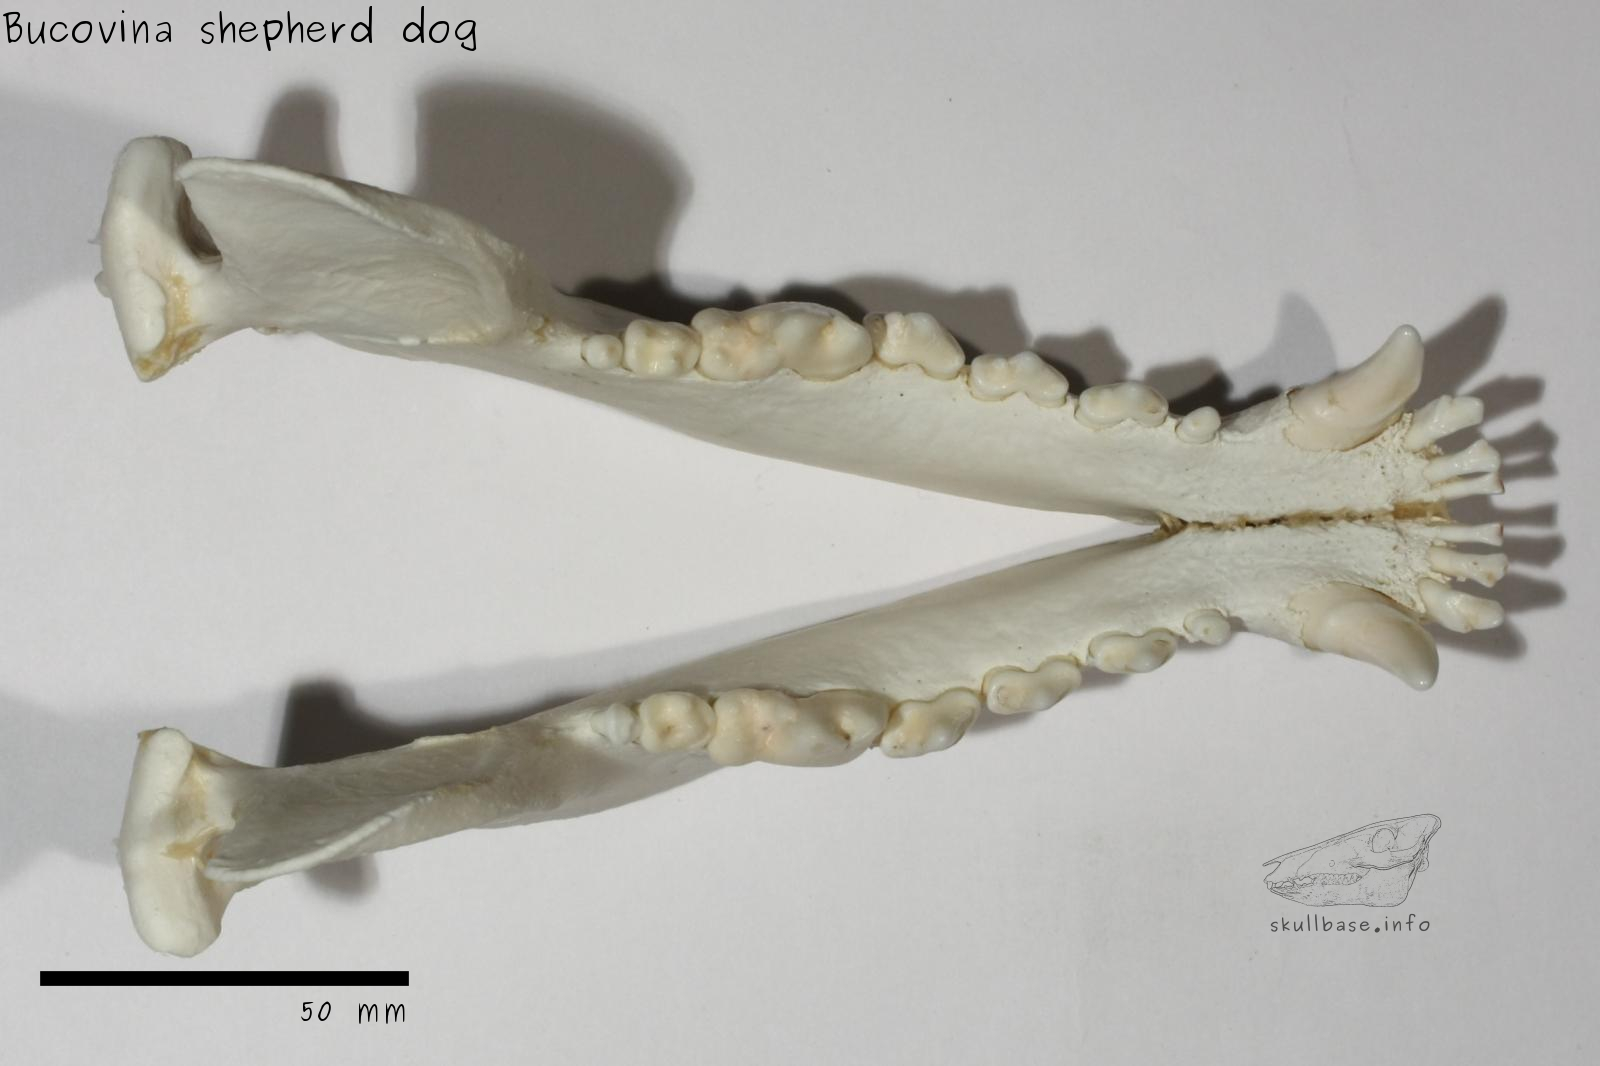 Bucovina shepherd dog (Canis lupus familiaris) jaw